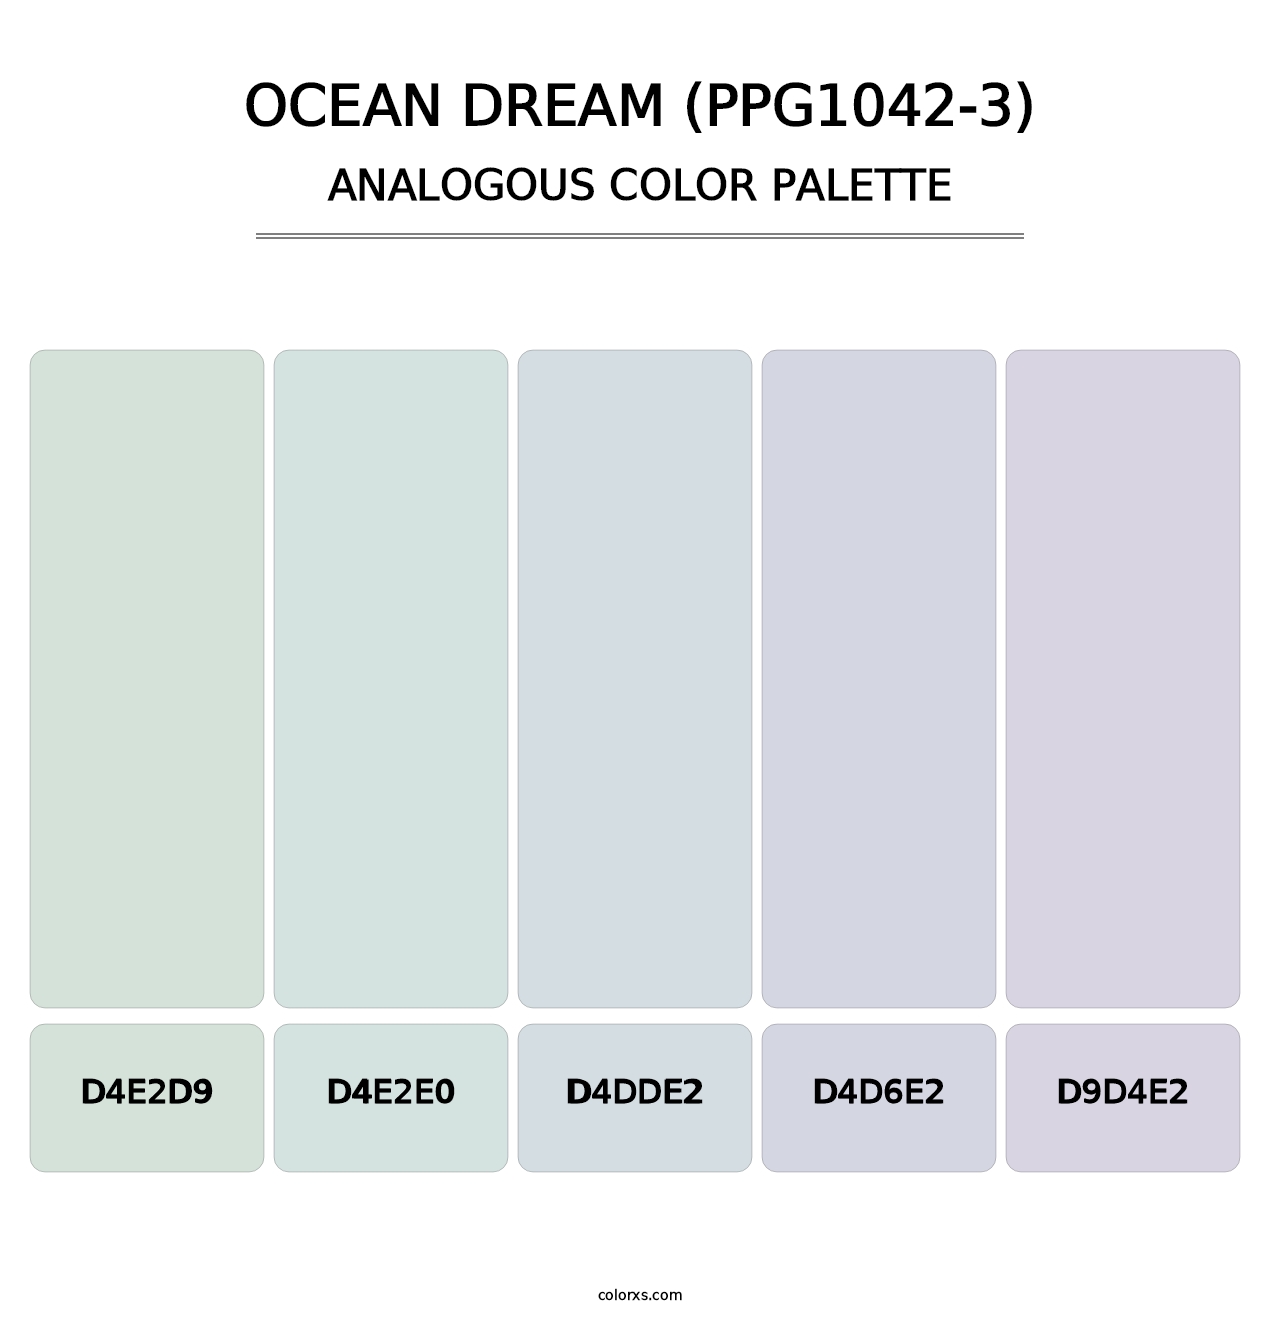 Ocean Dream (PPG1042-3) - Analogous Color Palette